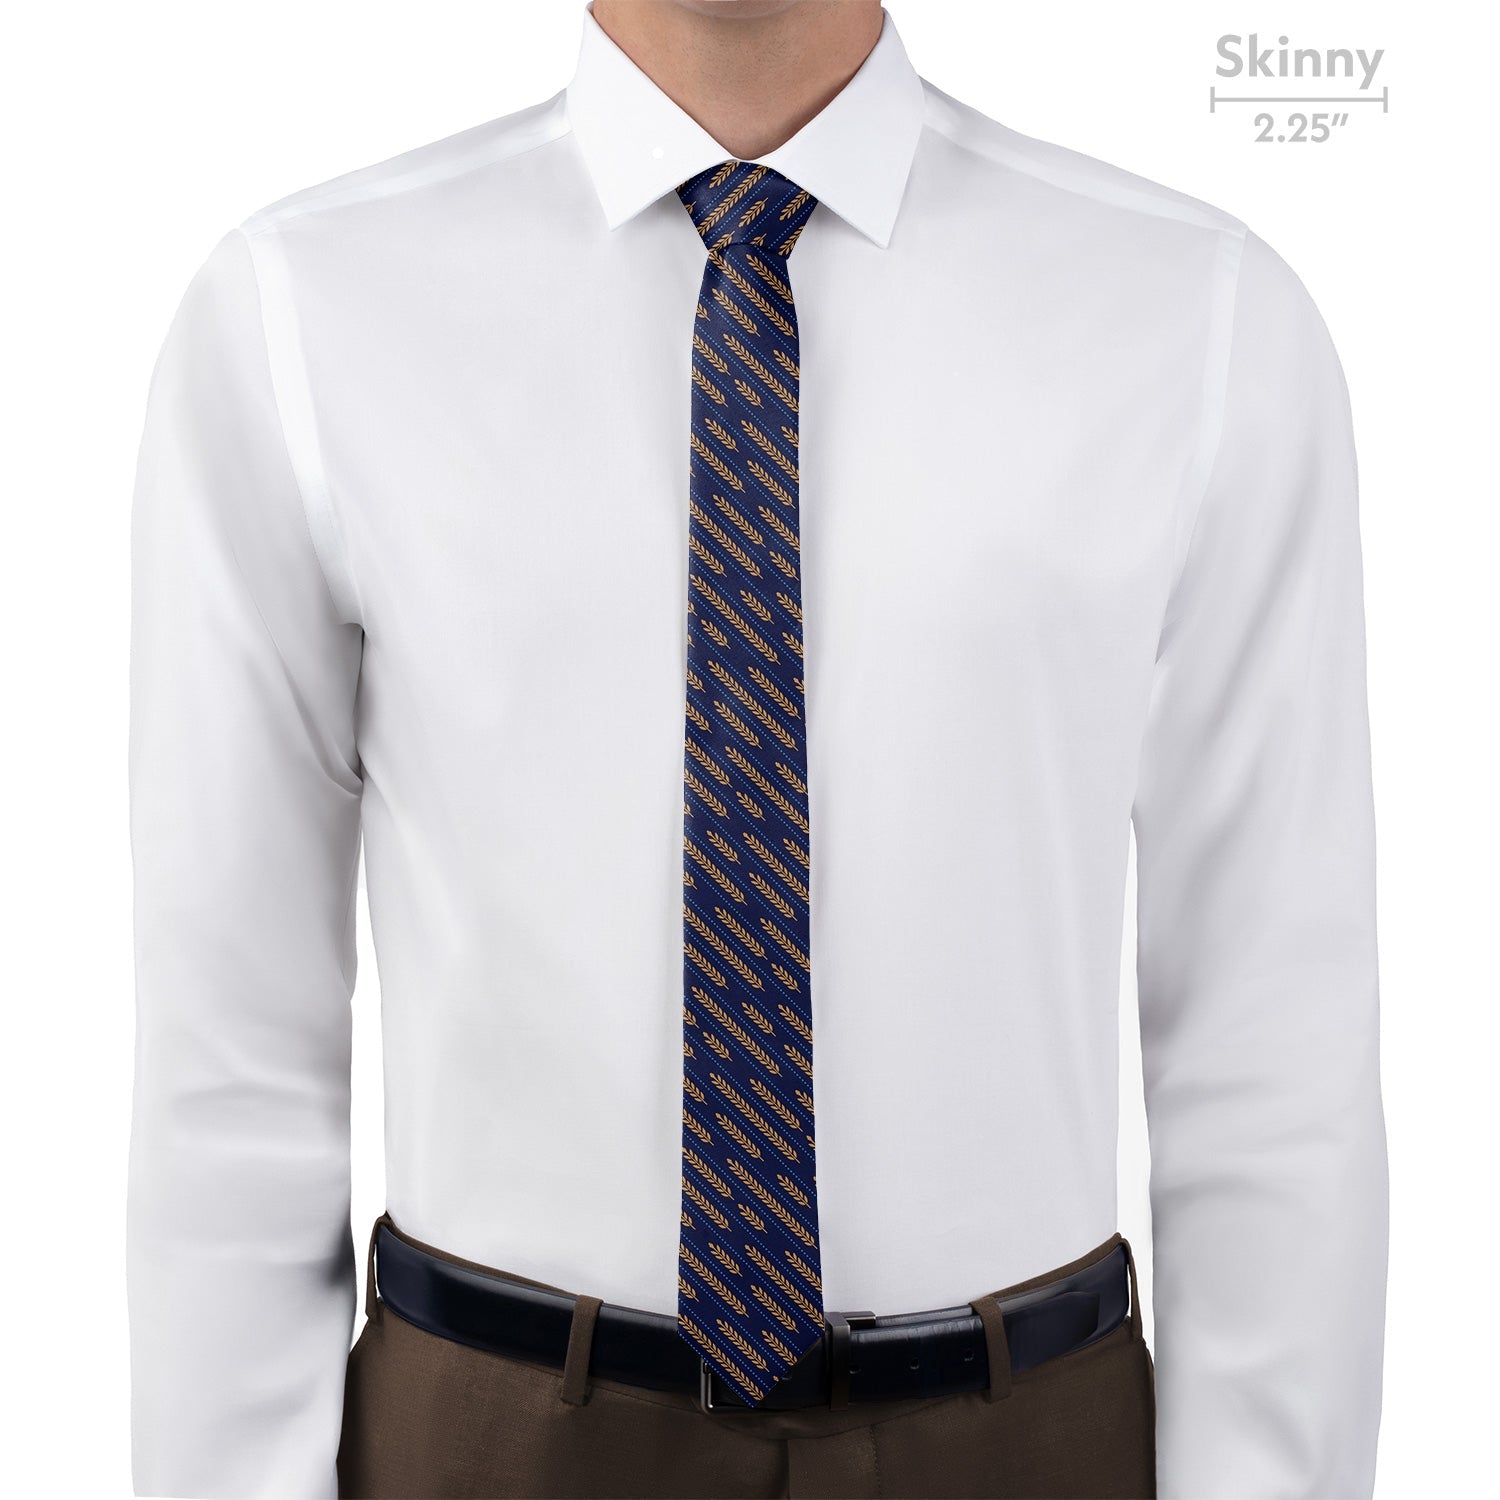 Wheat Necktie - Skinny - Knotty Tie Co.